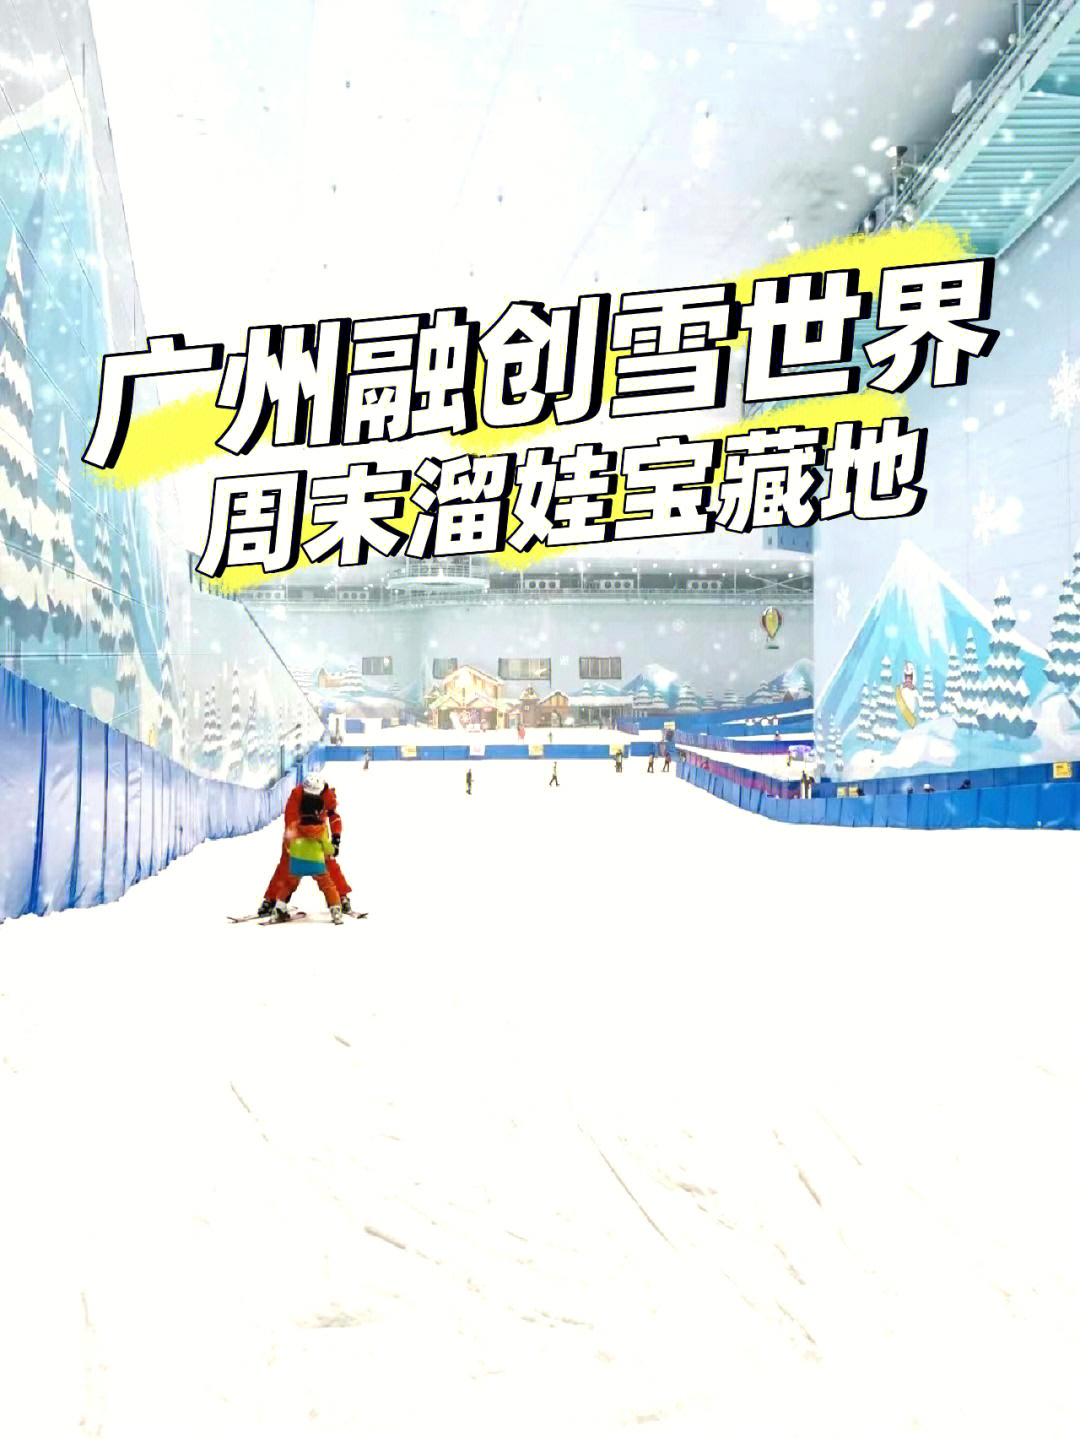 6199广州融创雪世界超级大,华南地区第一大室内滑雪场,除了有滑